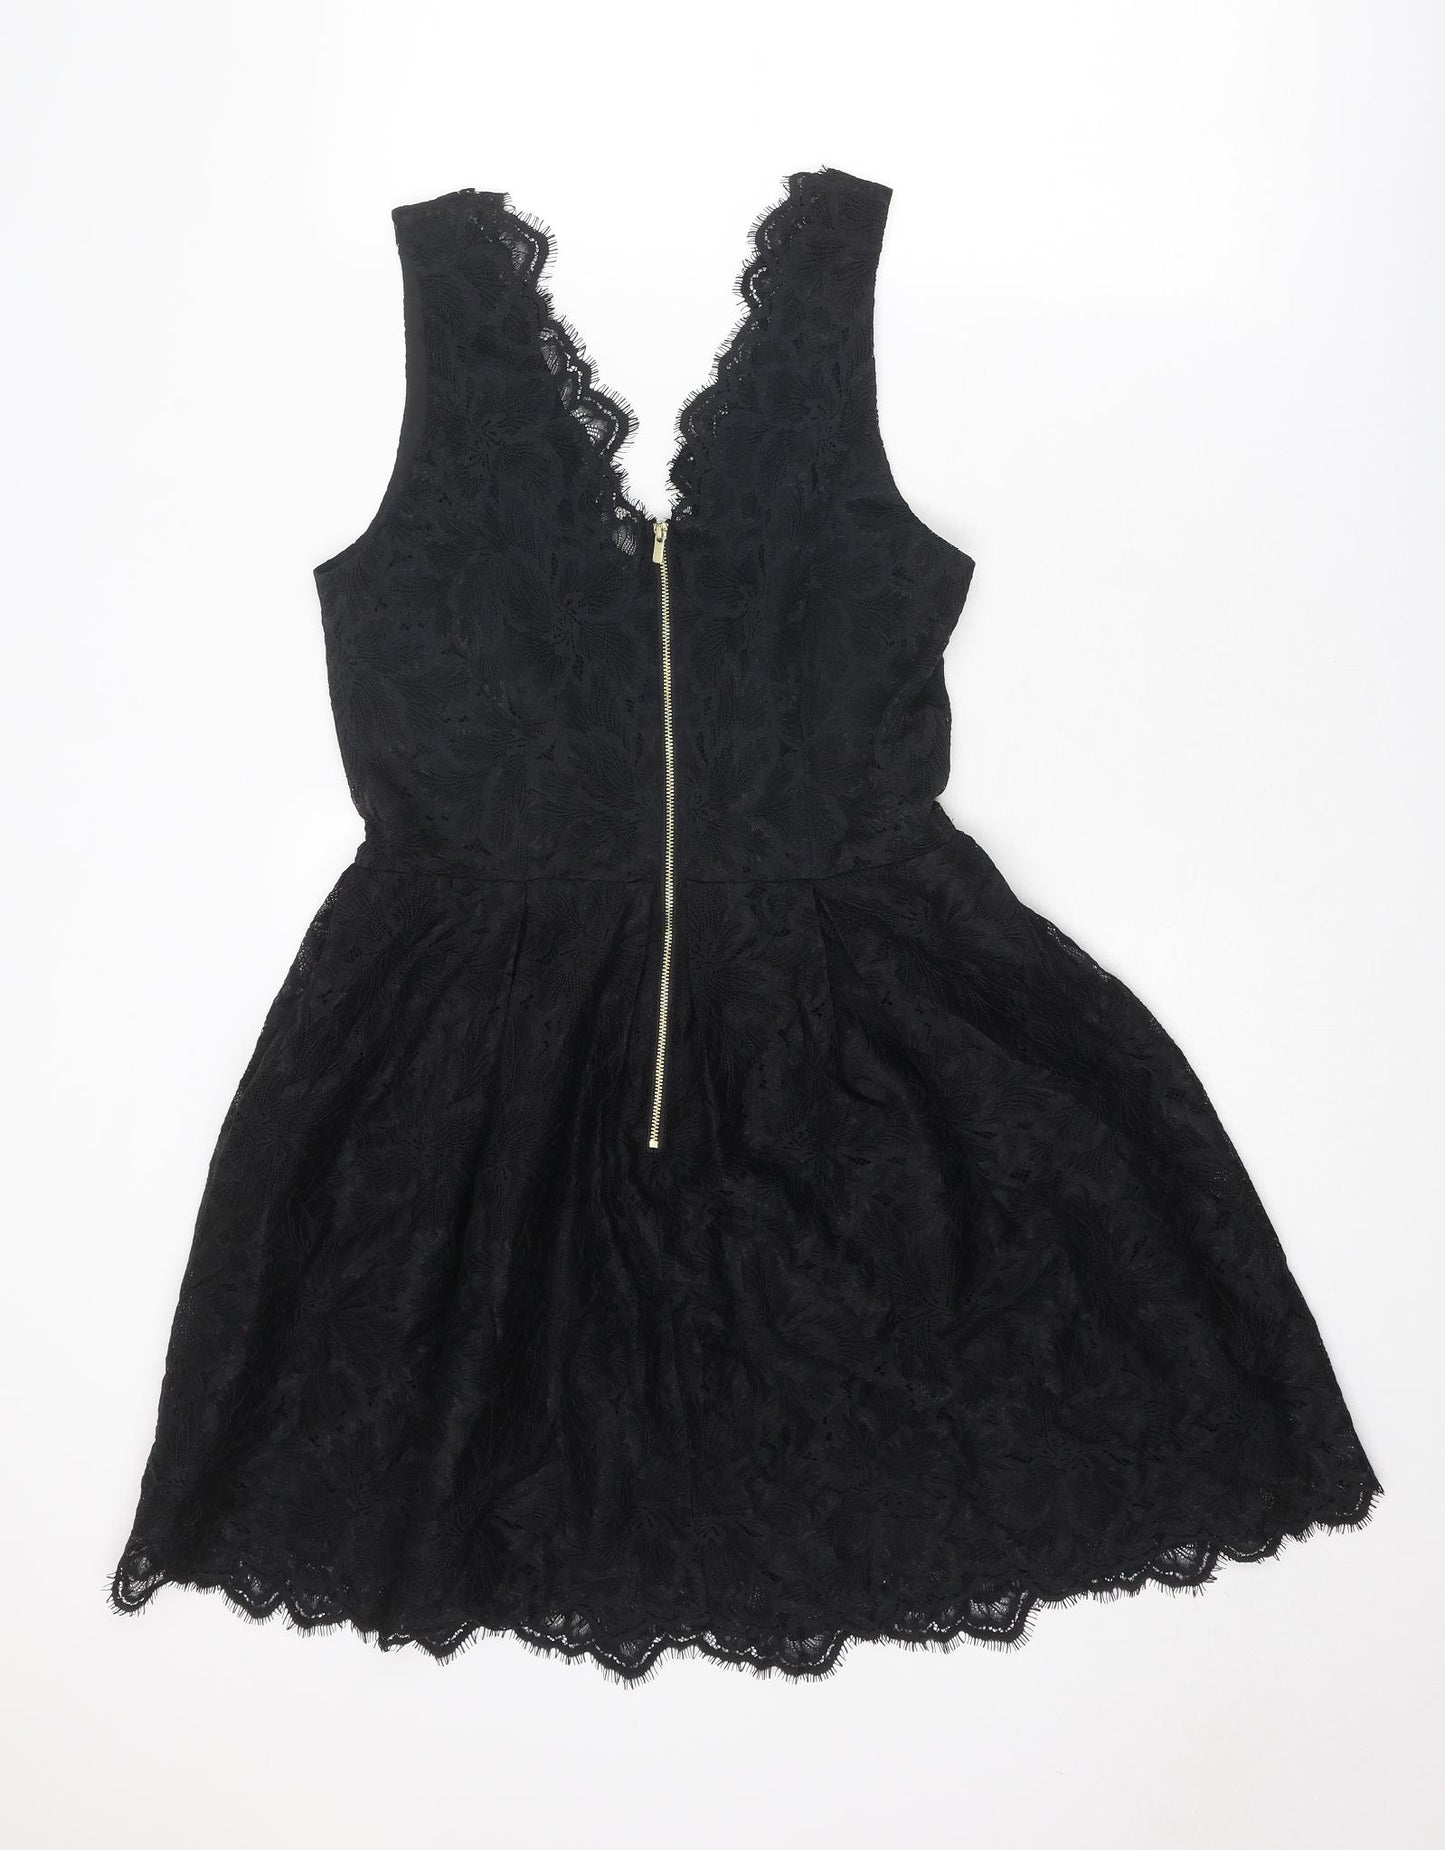 H&M Womens Black Floral Polyamide Fit & Flare Size 10 V-Neck Zip